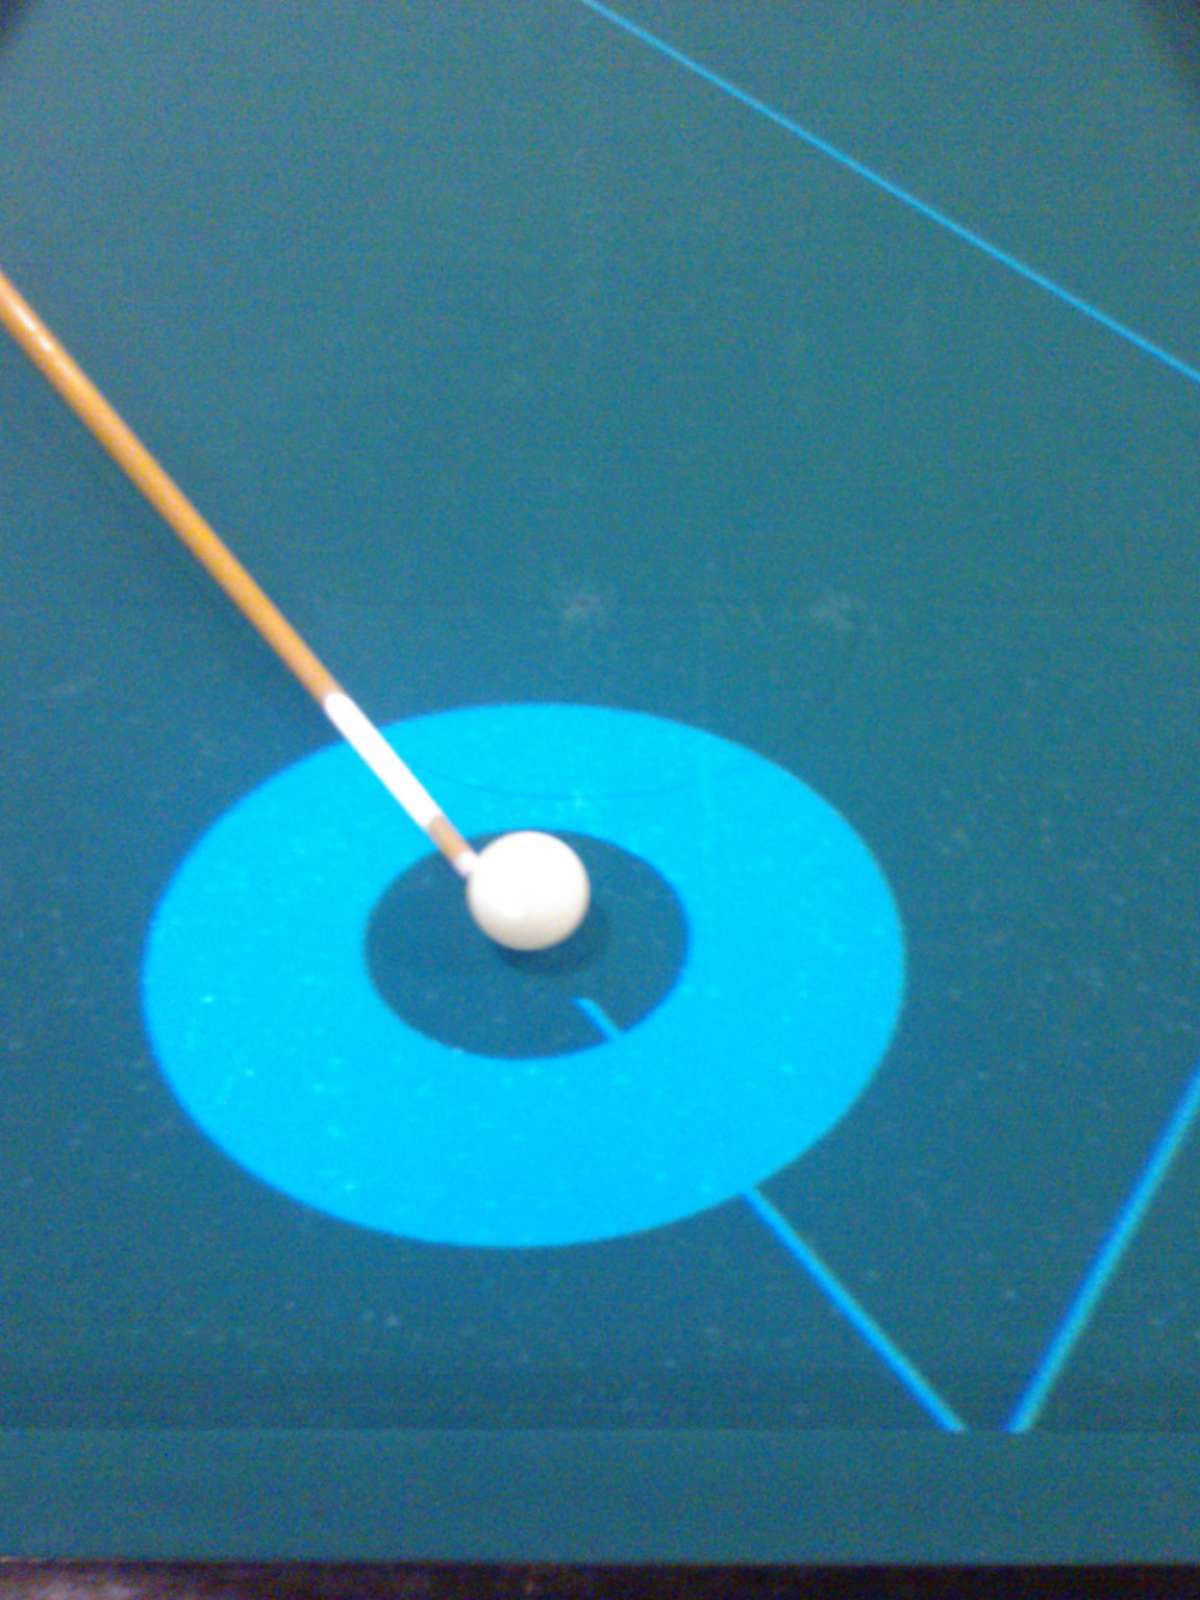 Sistema projeta trajetória da bola para ajudar jogador de sinuca